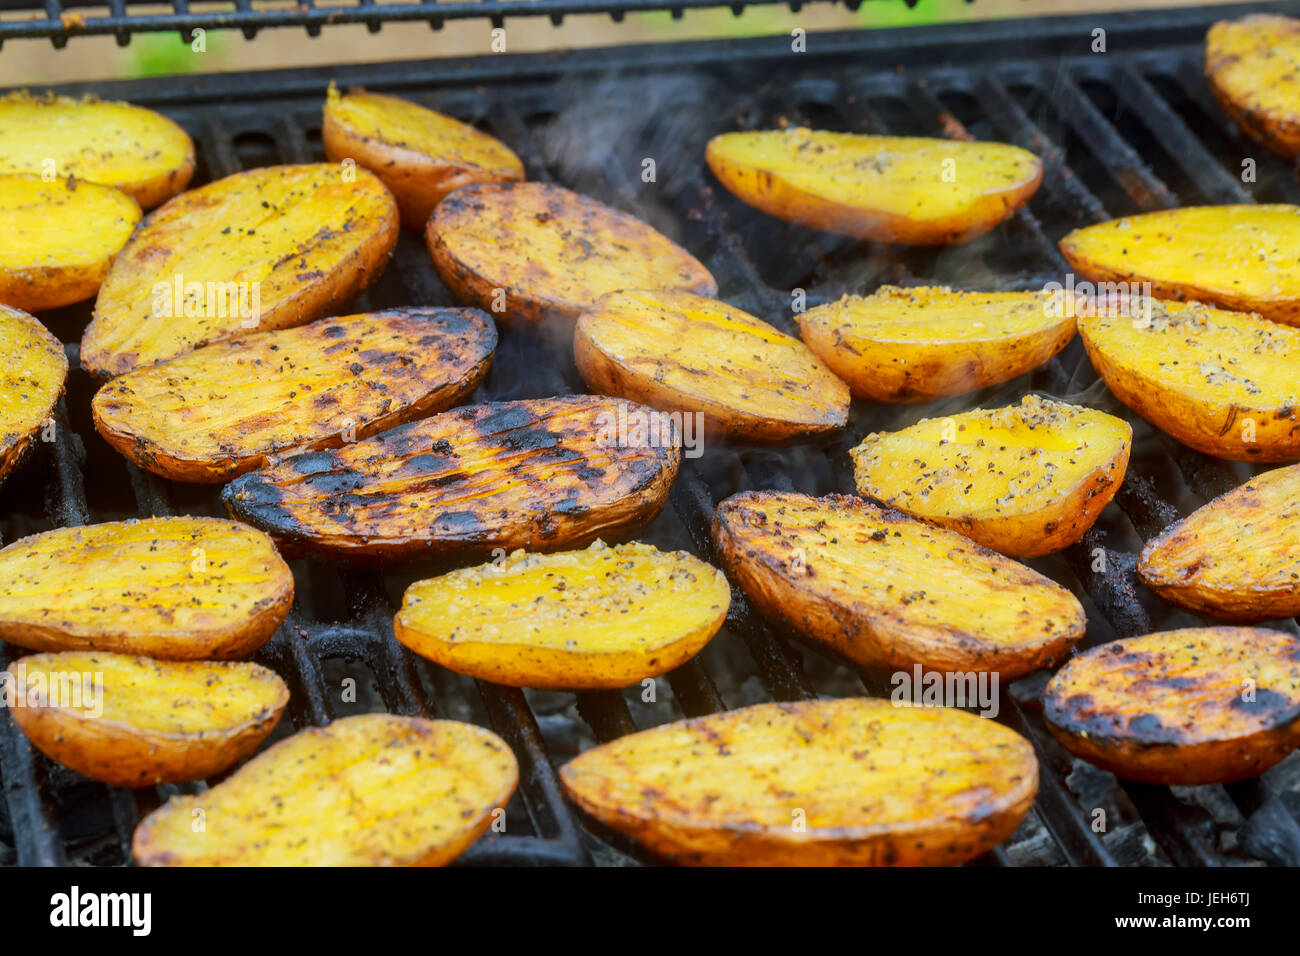 Leckere Kartoffeln auf Grill Grillen. Scheibe Kartoffel werden an sonnigen  Tag auf dem Grill zubereitet Stockfotografie - Alamy